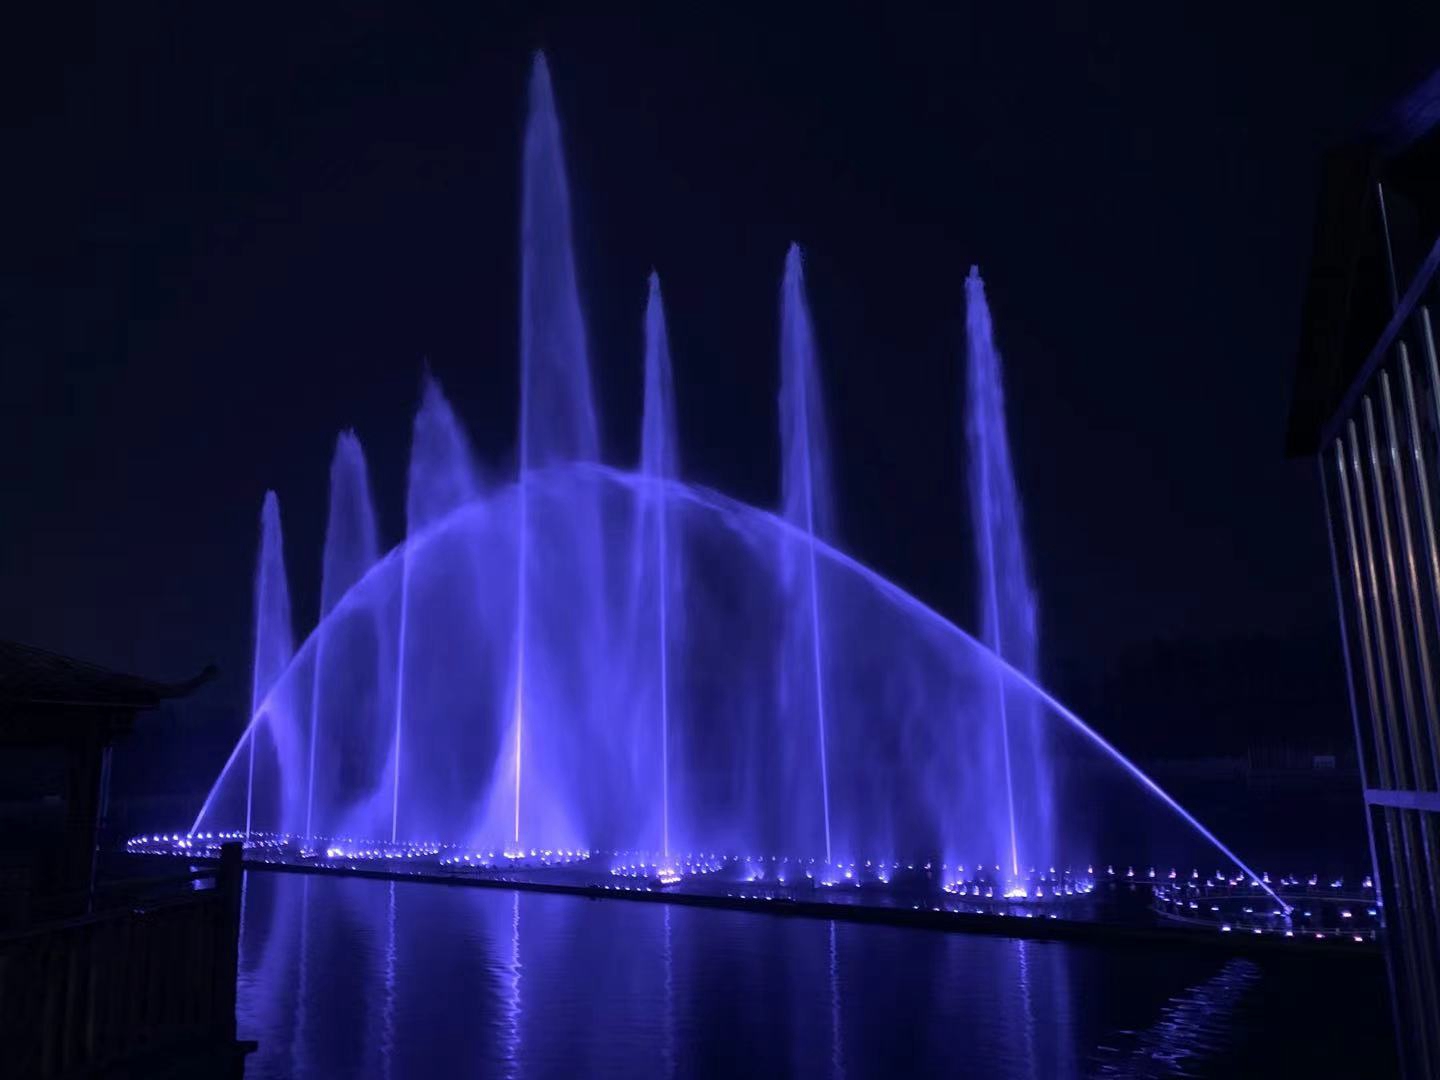 雄山公园音乐喷泉地址图片